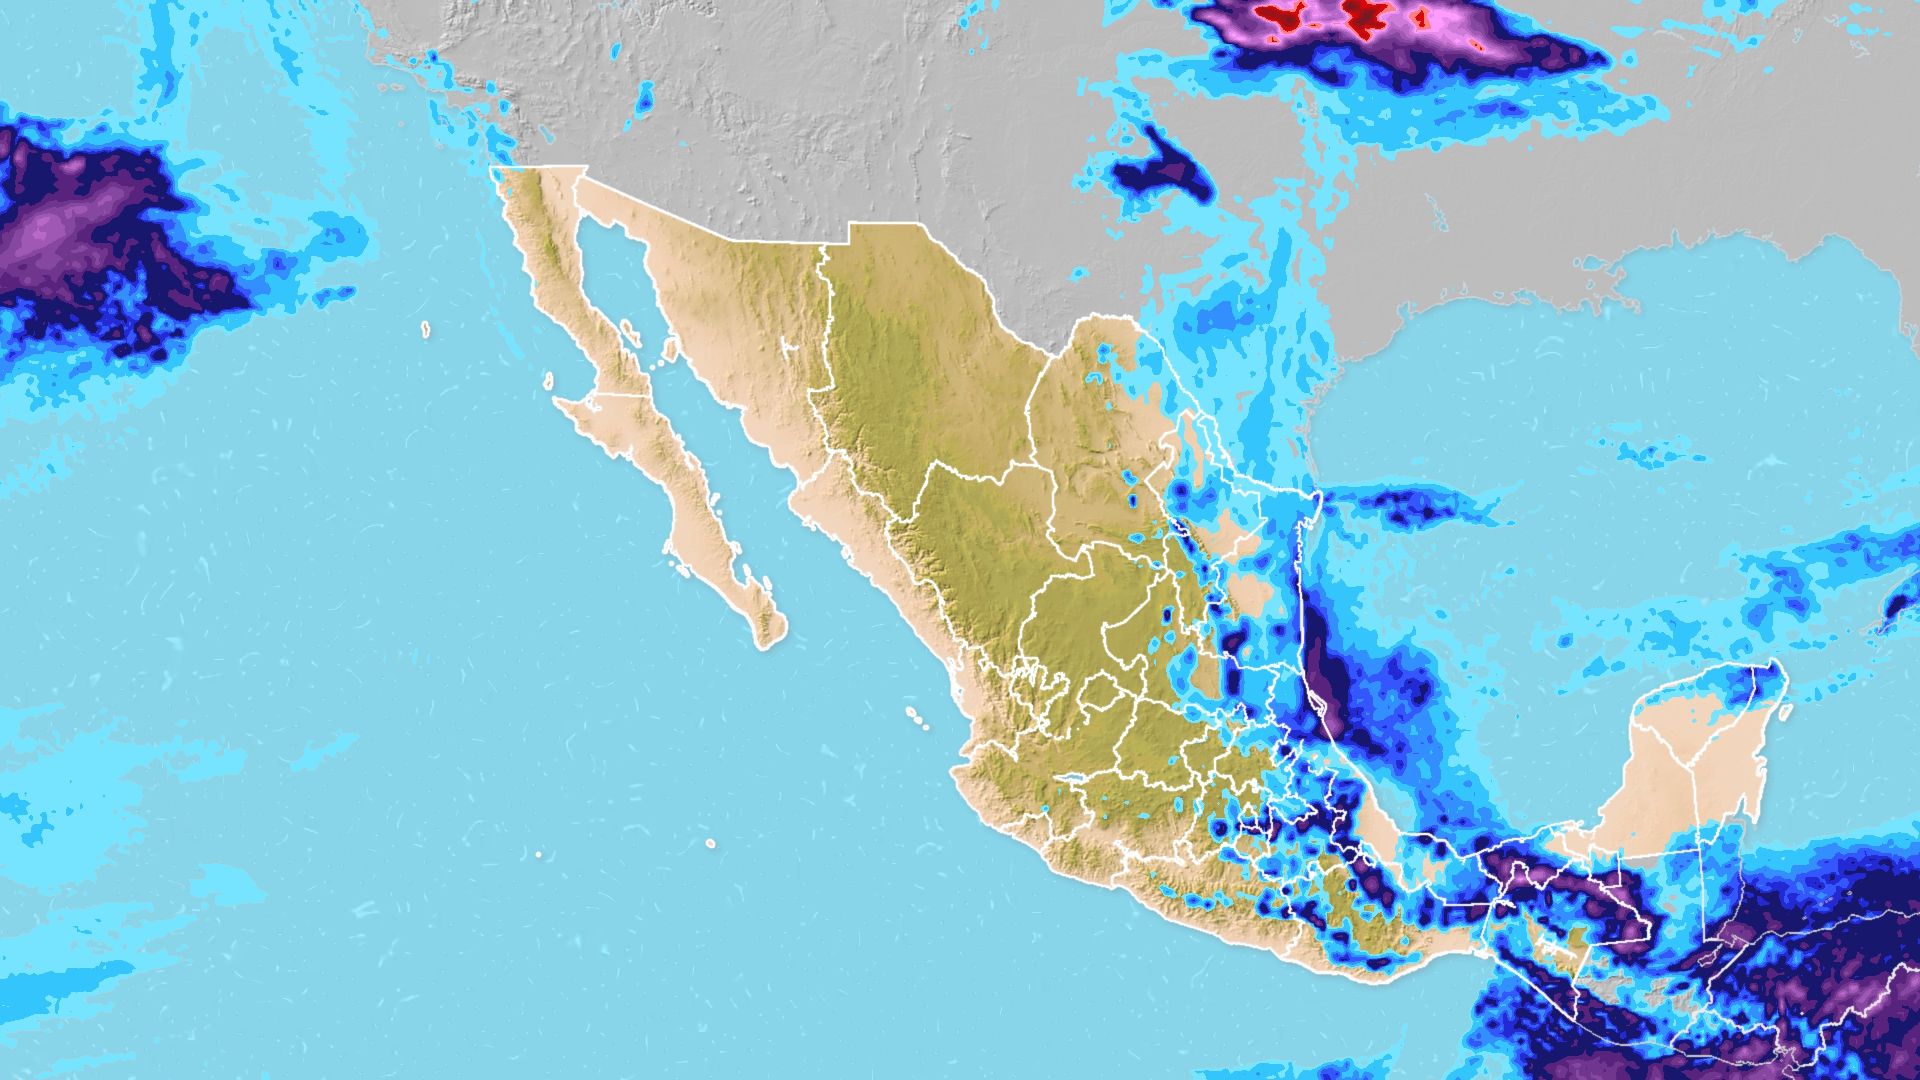 Pronóstico de precipitaciones de Meteored: ¿en qué estados se esperan lluvias esta semana?. Noticias en tiempo real